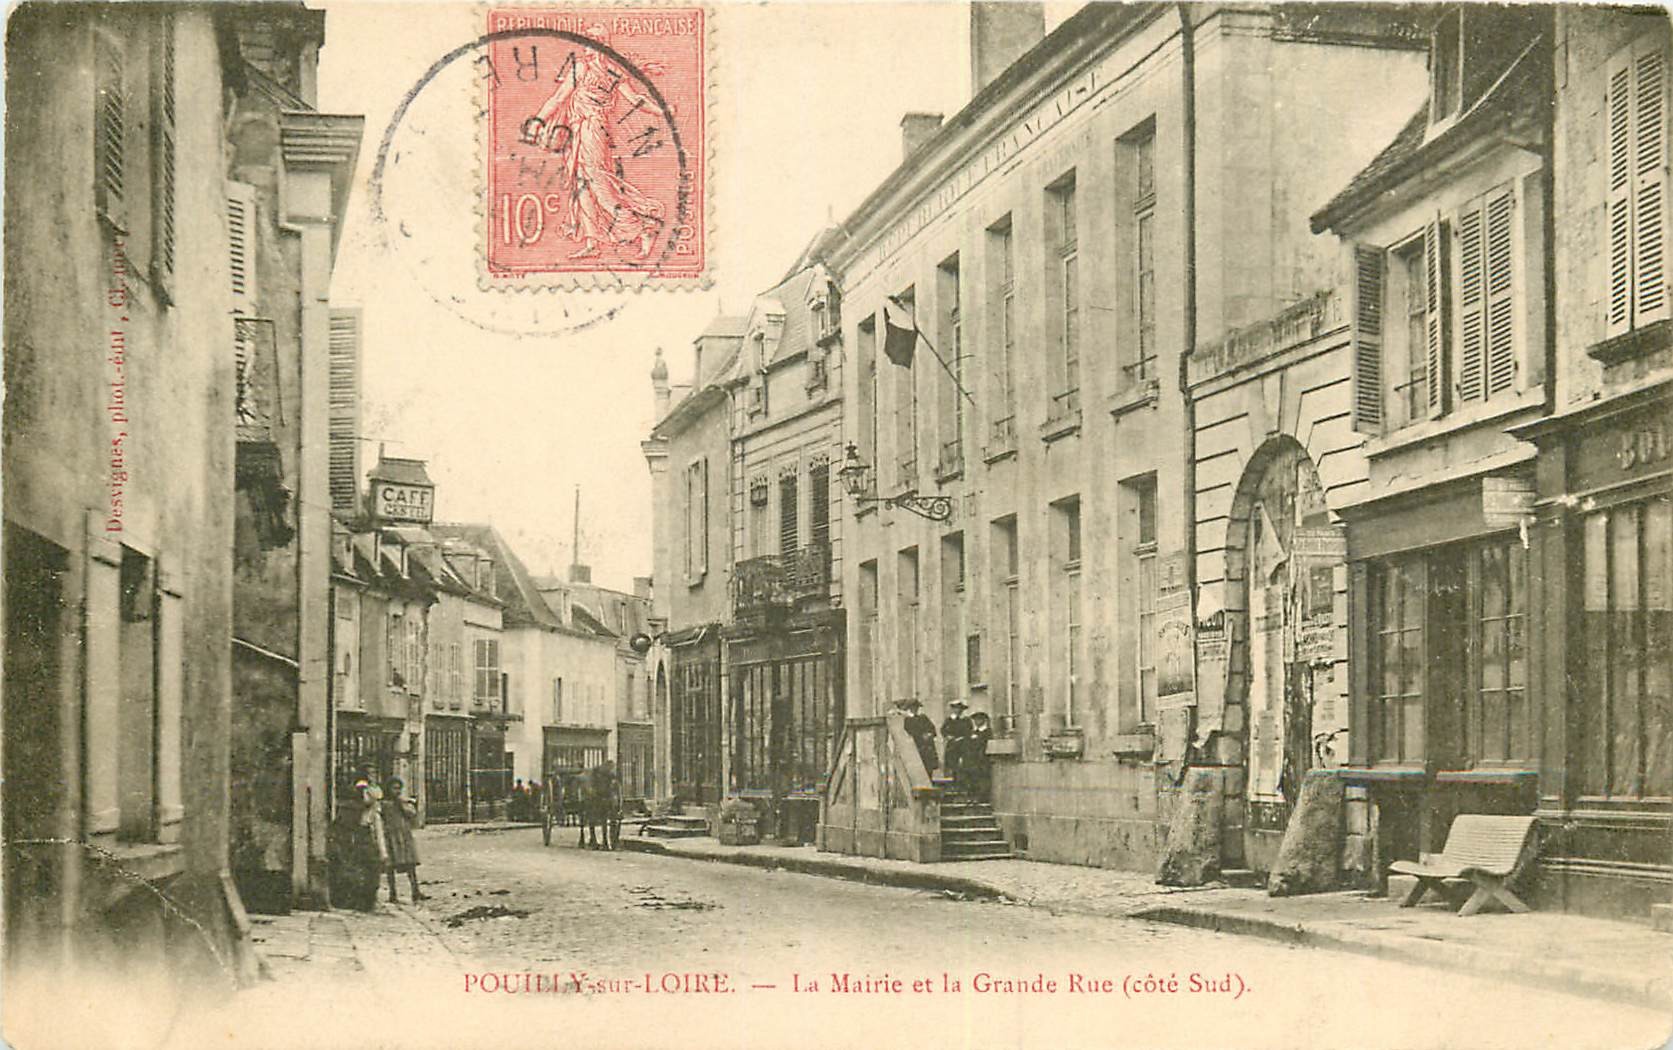 WW 58 POUILLY-SUR-LOIRE. La Mairie sur Grande Rue 1905